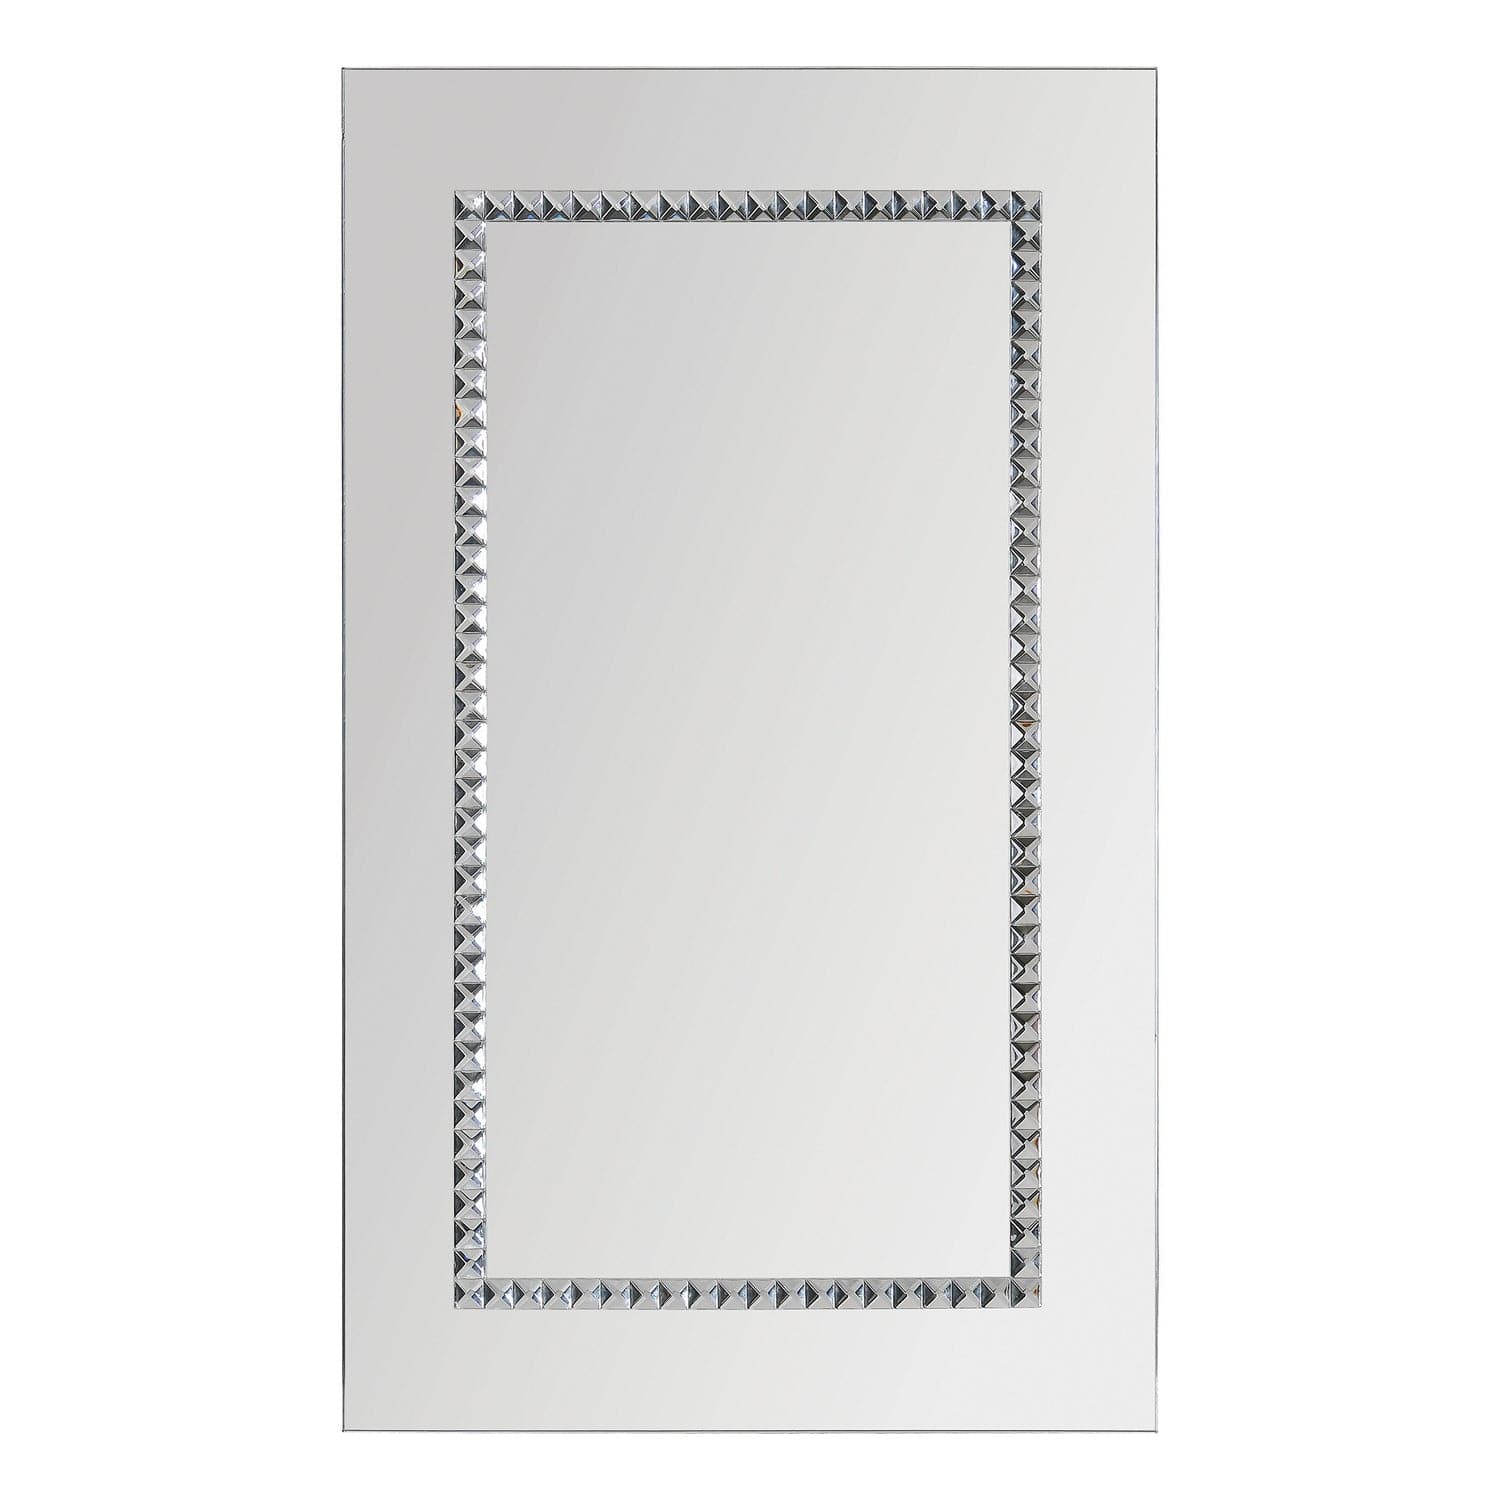 Renwil - MT1216 - Mirror - Embedded Jewels - Chrome/Jewel Border